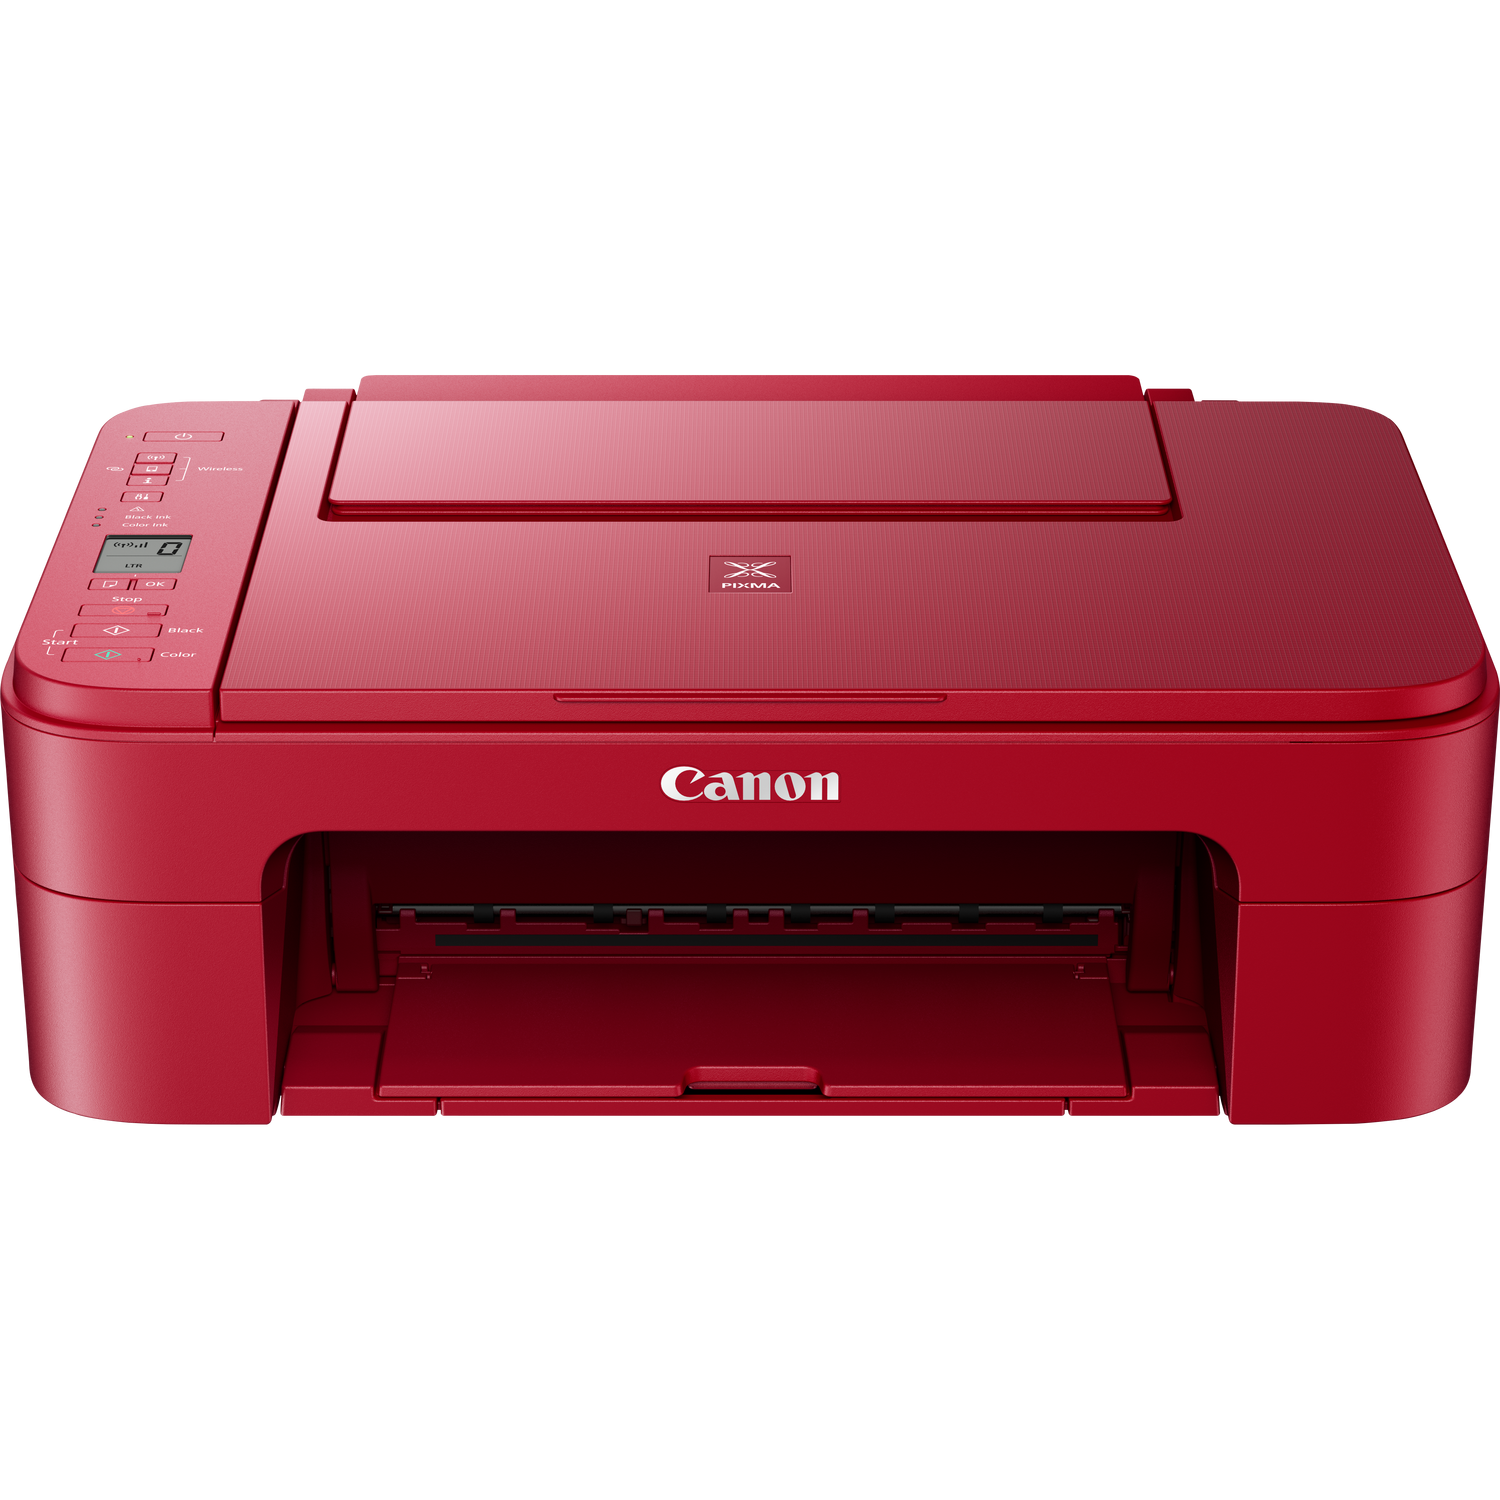 Elevado Violeta Sangrar Compra Impresora de inyección de tinta PIXMA TS3352 de Canon, roja — Tienda  Canon Espana